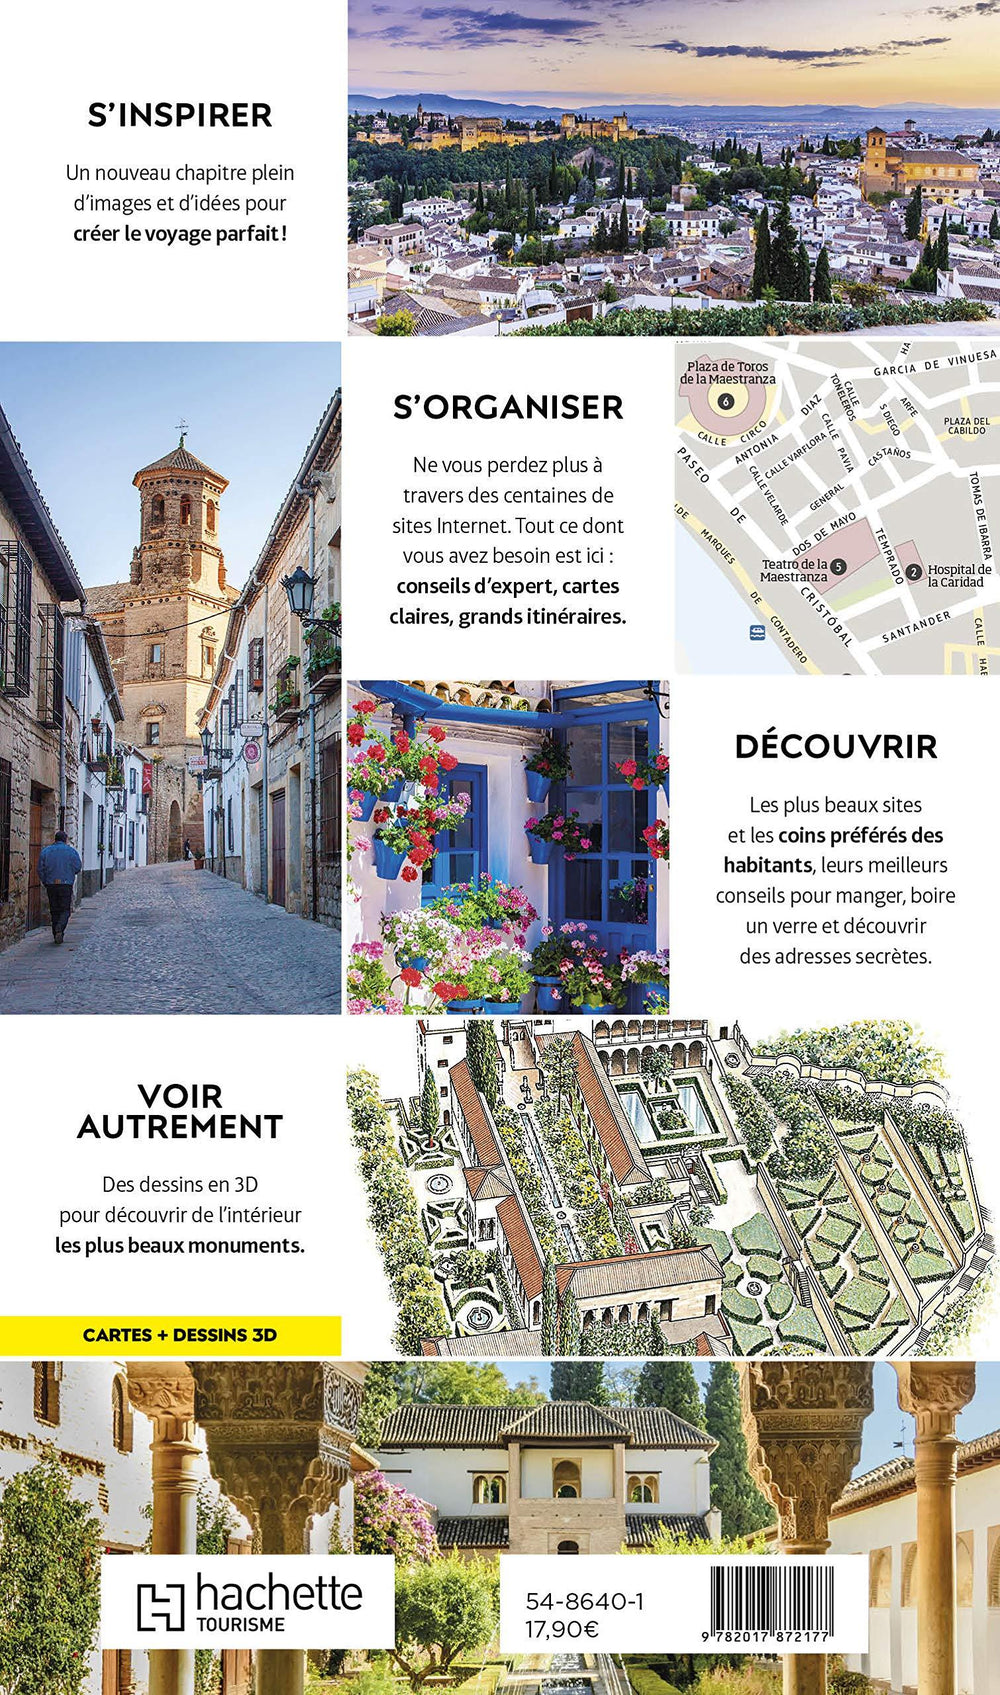 Guide de voyage - Andalousie (Séville, Cordoue, Grenade) - Édition 2021 | Guides Voir guide de voyage Guides Voir 